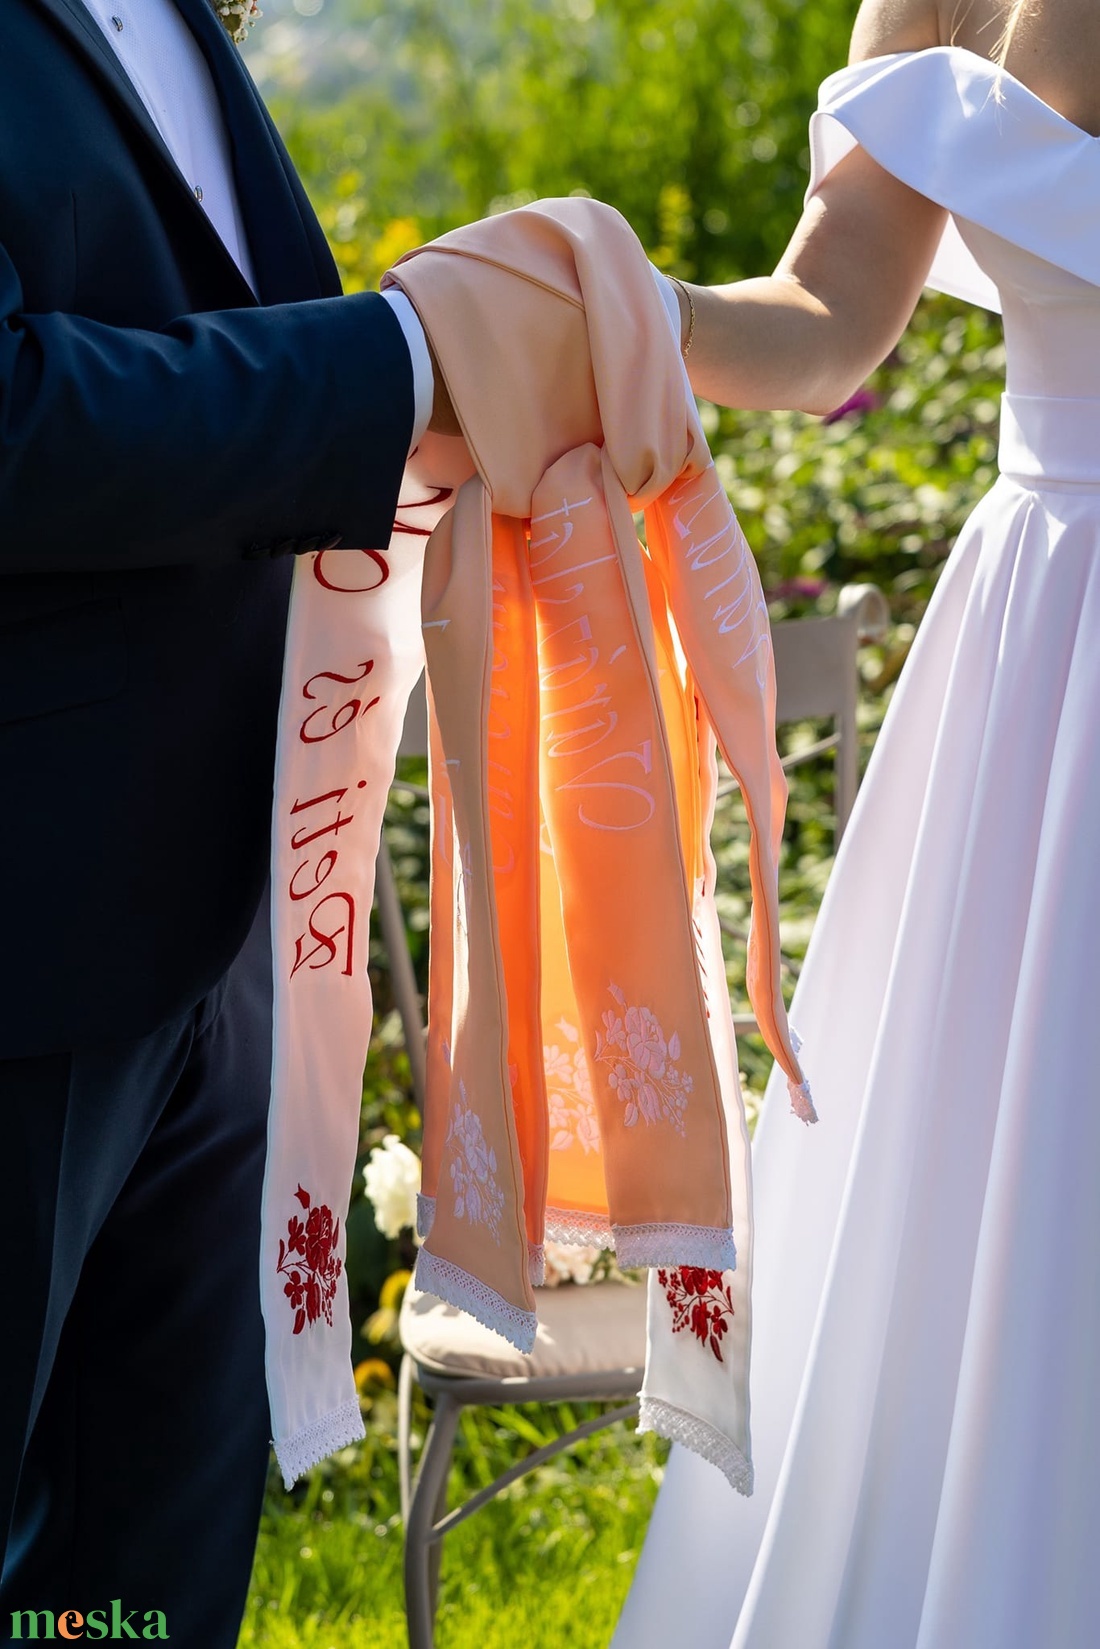 Esküvői szalag, vőfély szalag, kézfogó szalag - esküvő - dekoráció - helyszíni dekor - Meska.hu